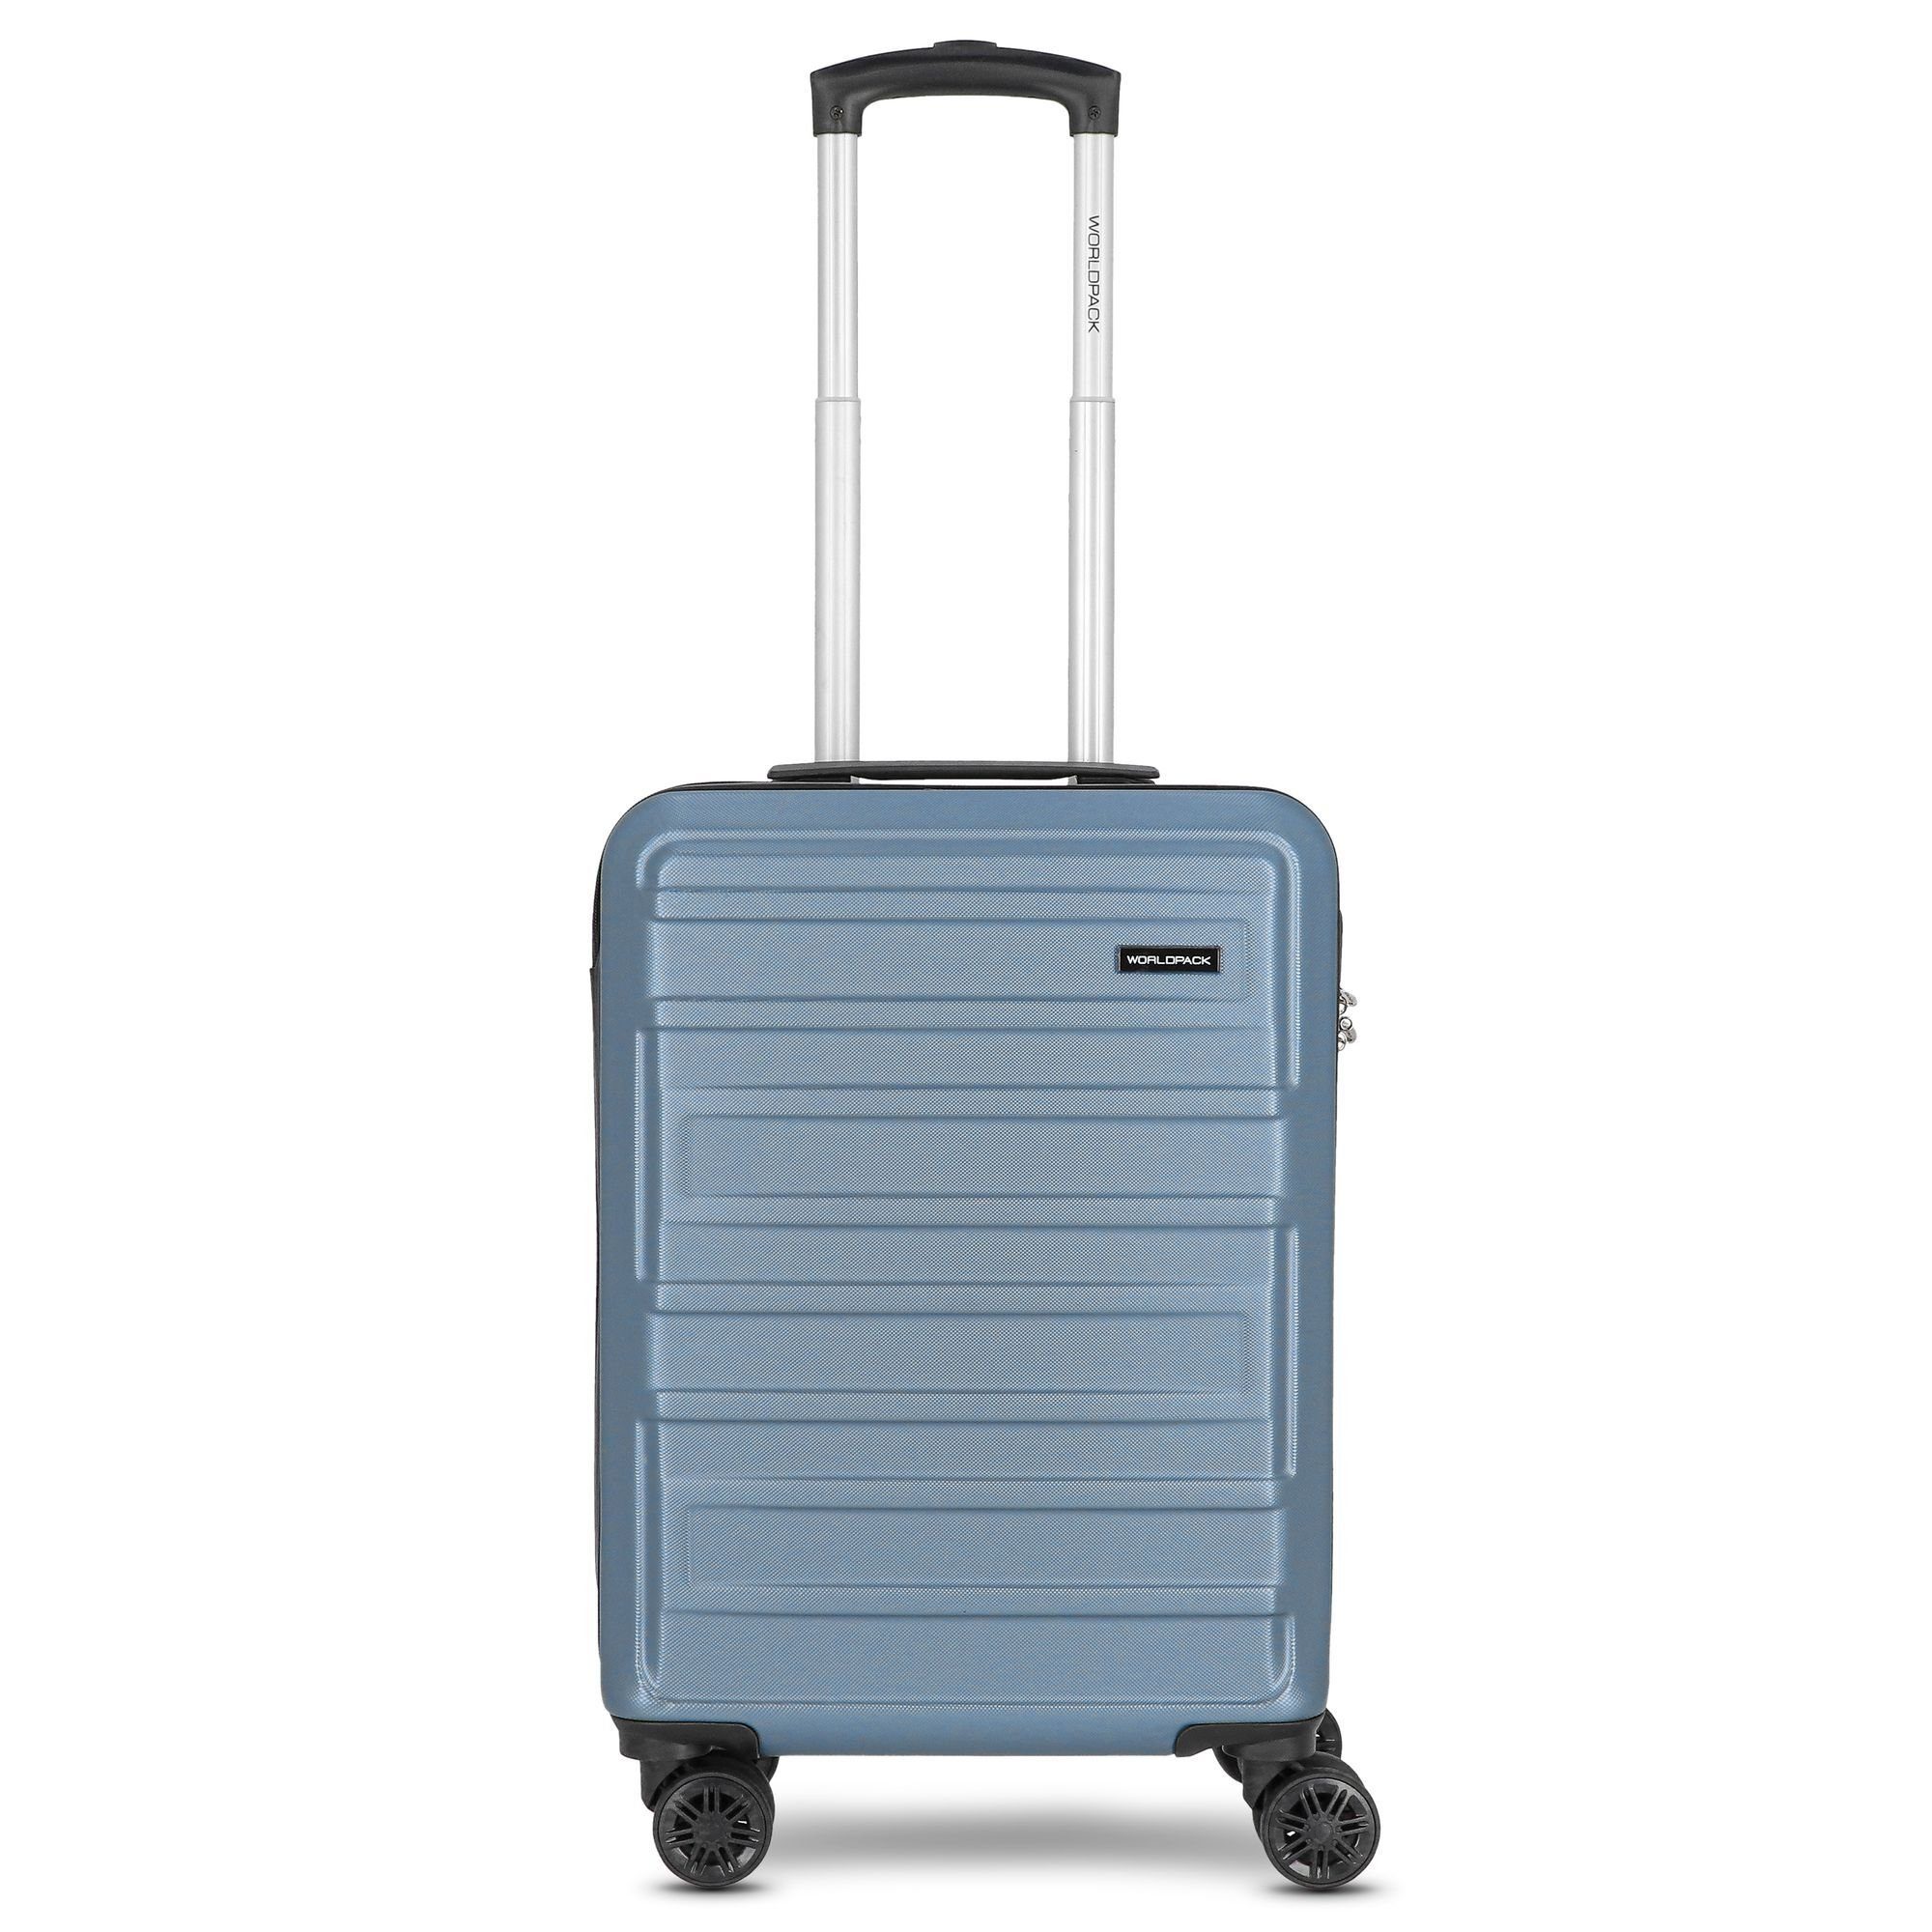 WORLDPACK Handgepäck-Trolley New York 2.0, 4 Rollen, ABS blue-metallic | Handgepäck-Koffer